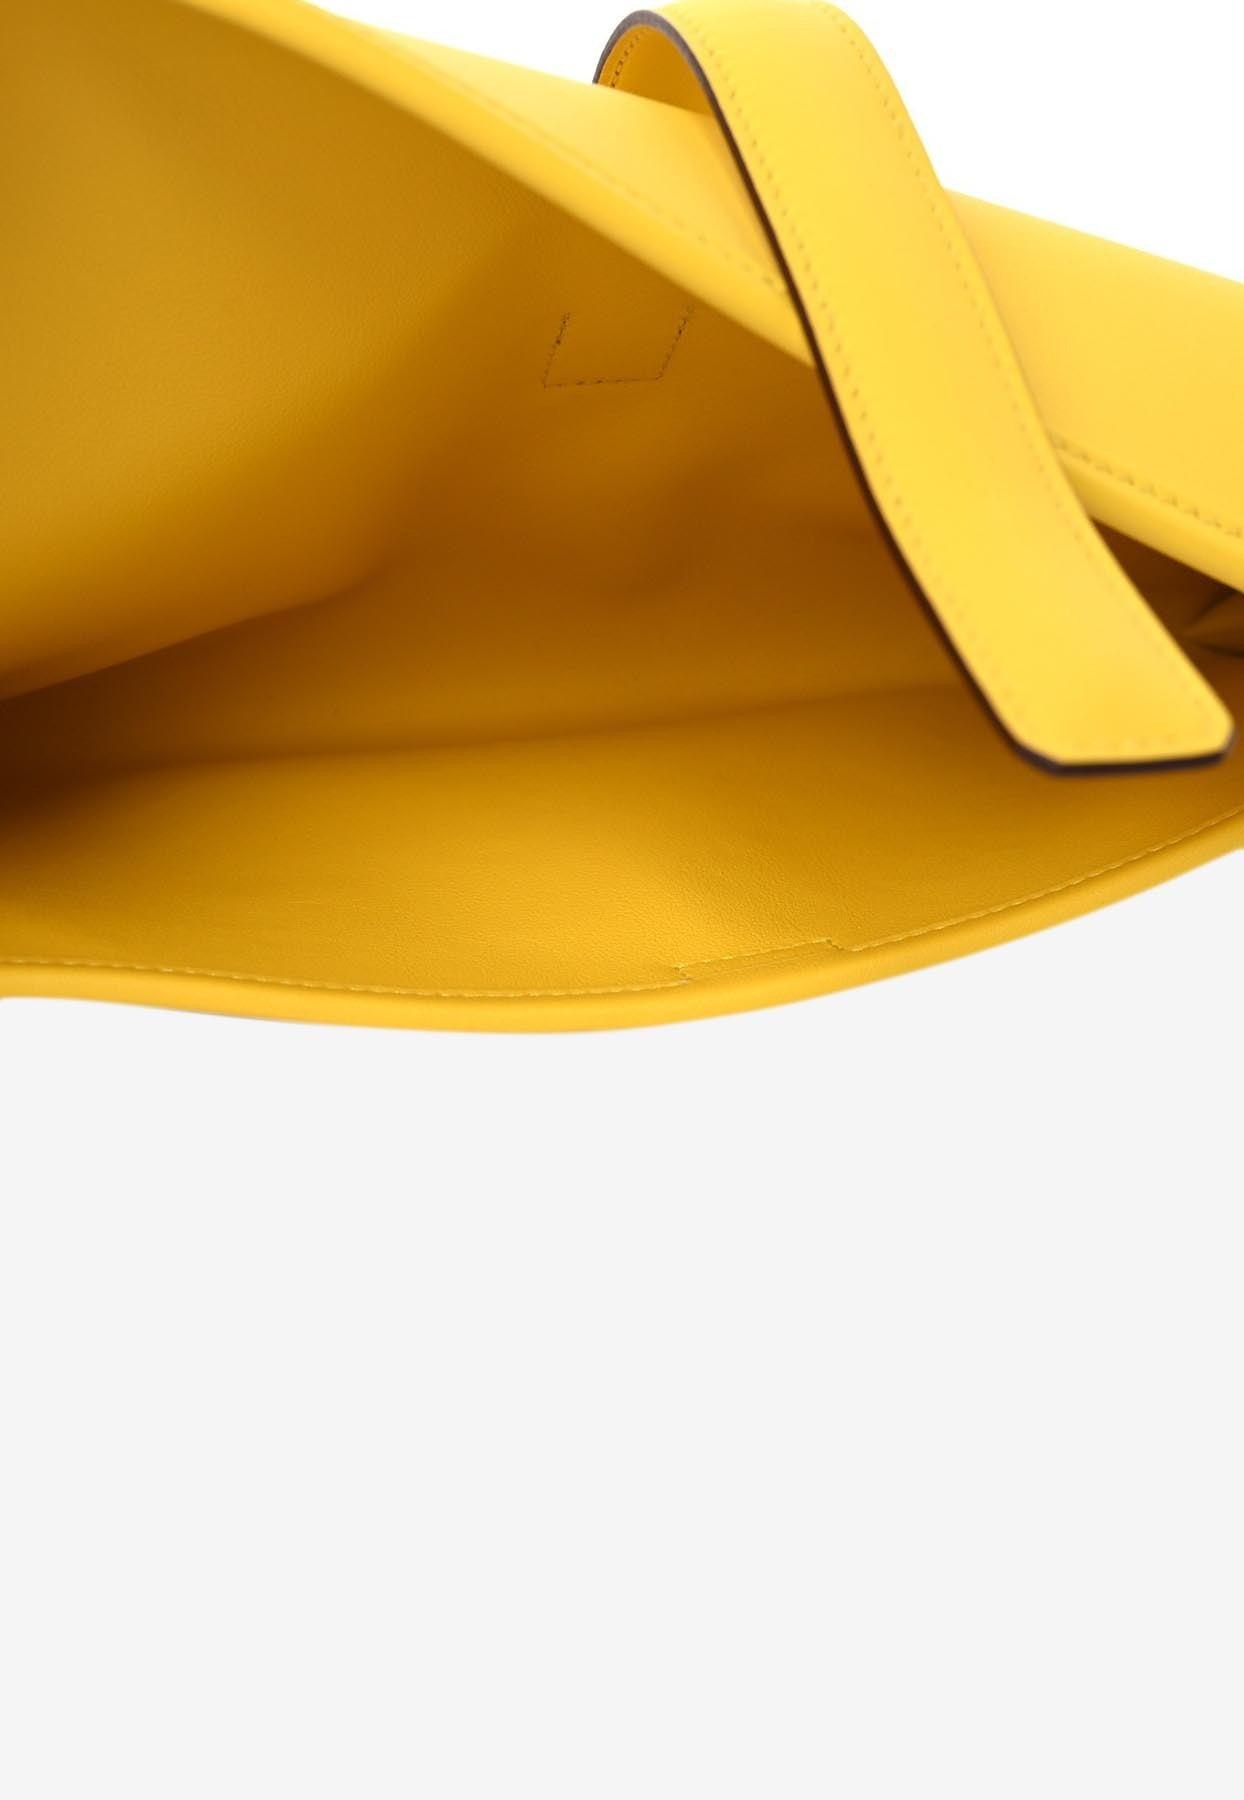 Hermès Jige Elan 29 Clutch In Jaune De Naples Swift in Yellow